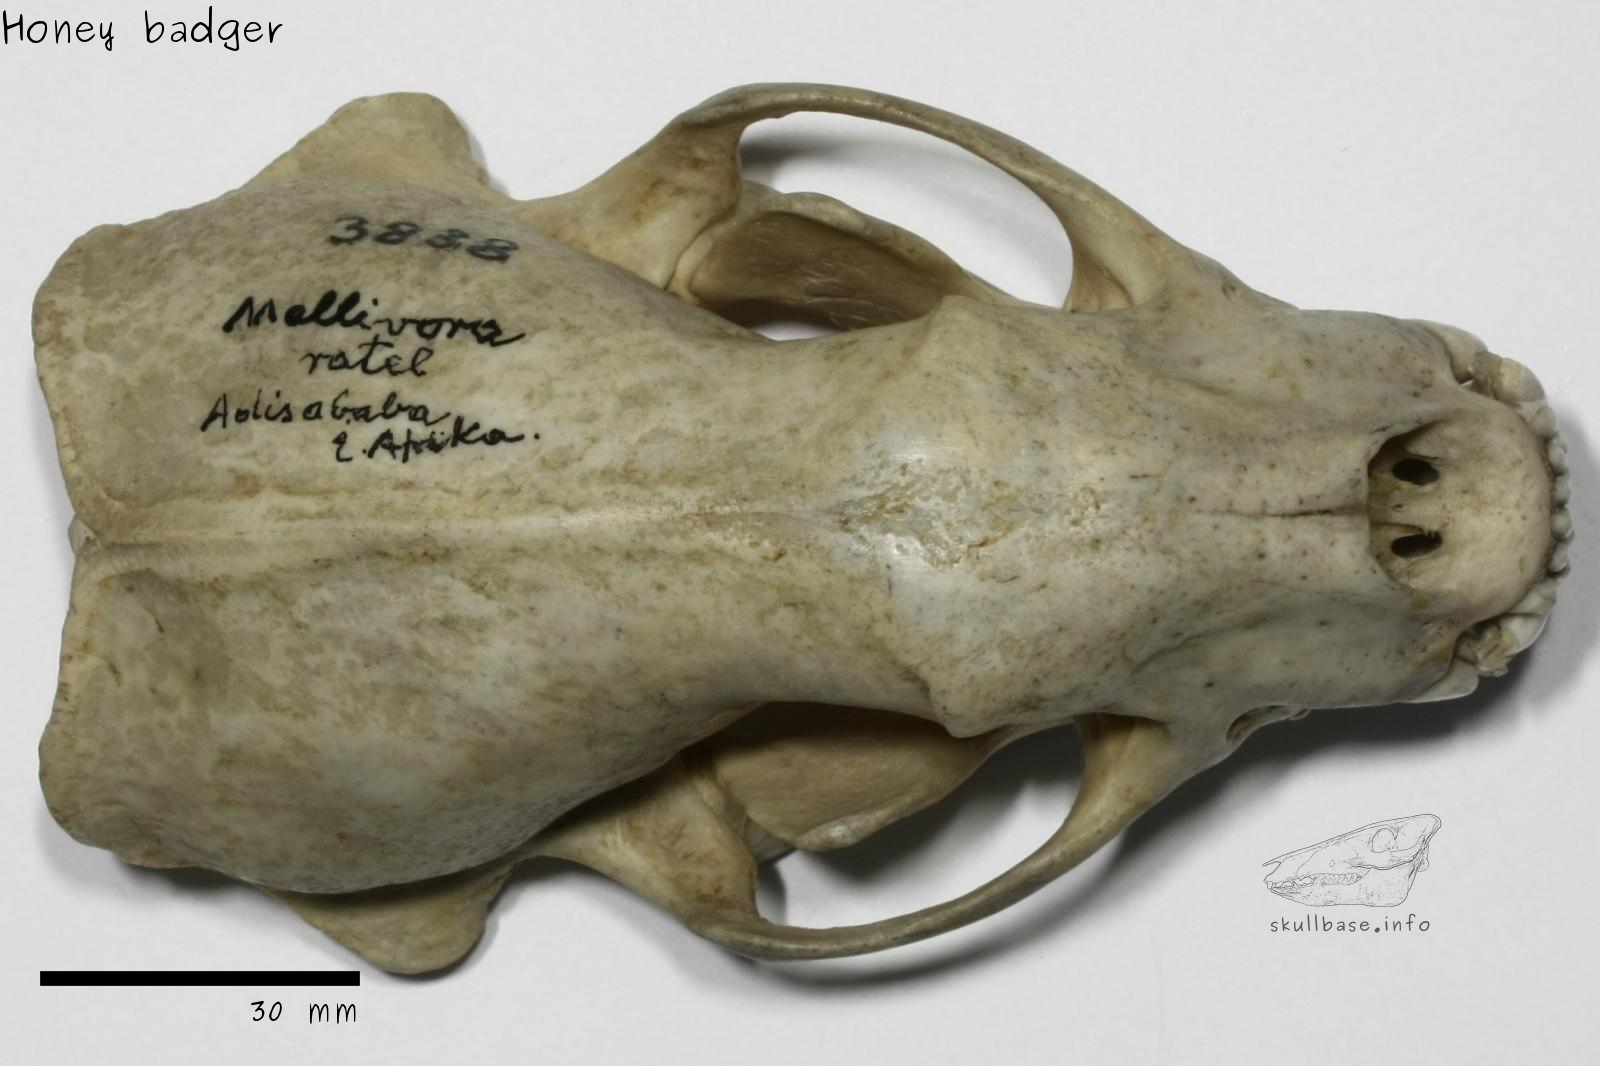 Honey badger (Mellivora capensis) skull dorsal view